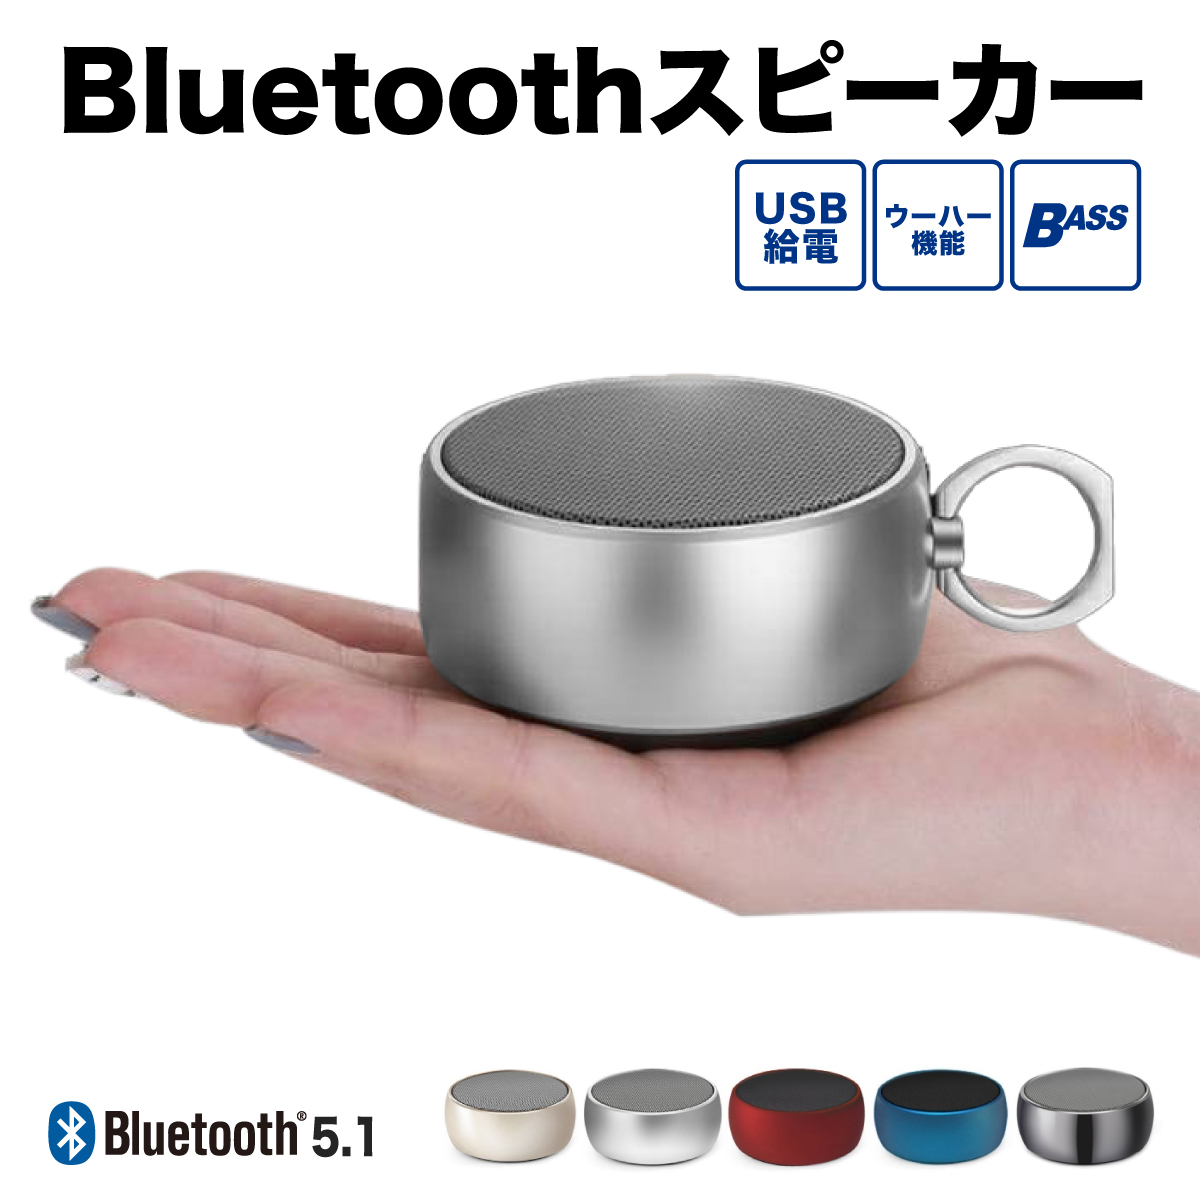 Bluetooth ブルートゥース スピーカー ワイヤレス 小型 ポータブル ステレオ MP3 USB 高音質 重低音 マイク内蔵 ライト オシャレ  iPhone/Android/PC対応 :m-025:ブルーライトアップ 通販 